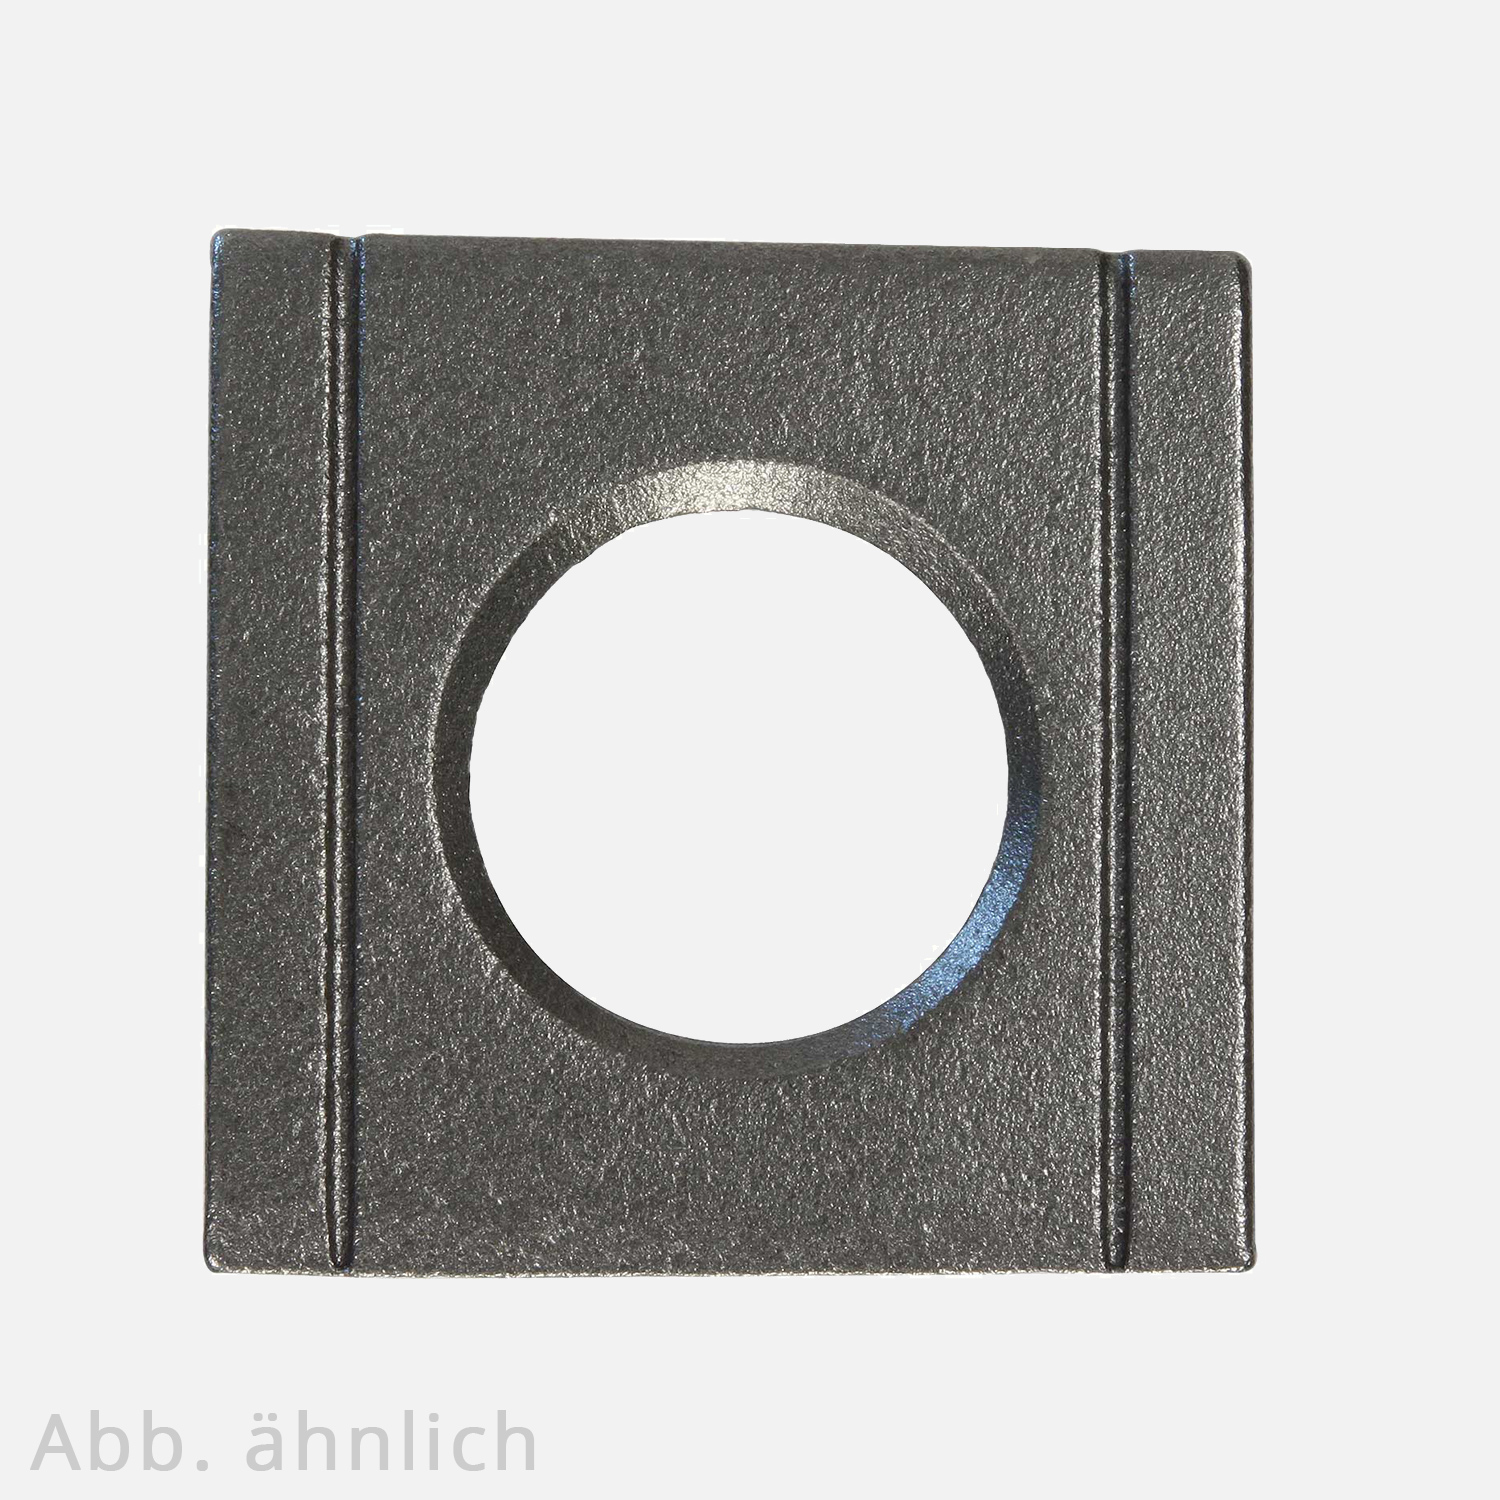 1 Vierkantscheibe - keilförmig 8% - 13 mm - DIN 6918 - Stahl vergütet